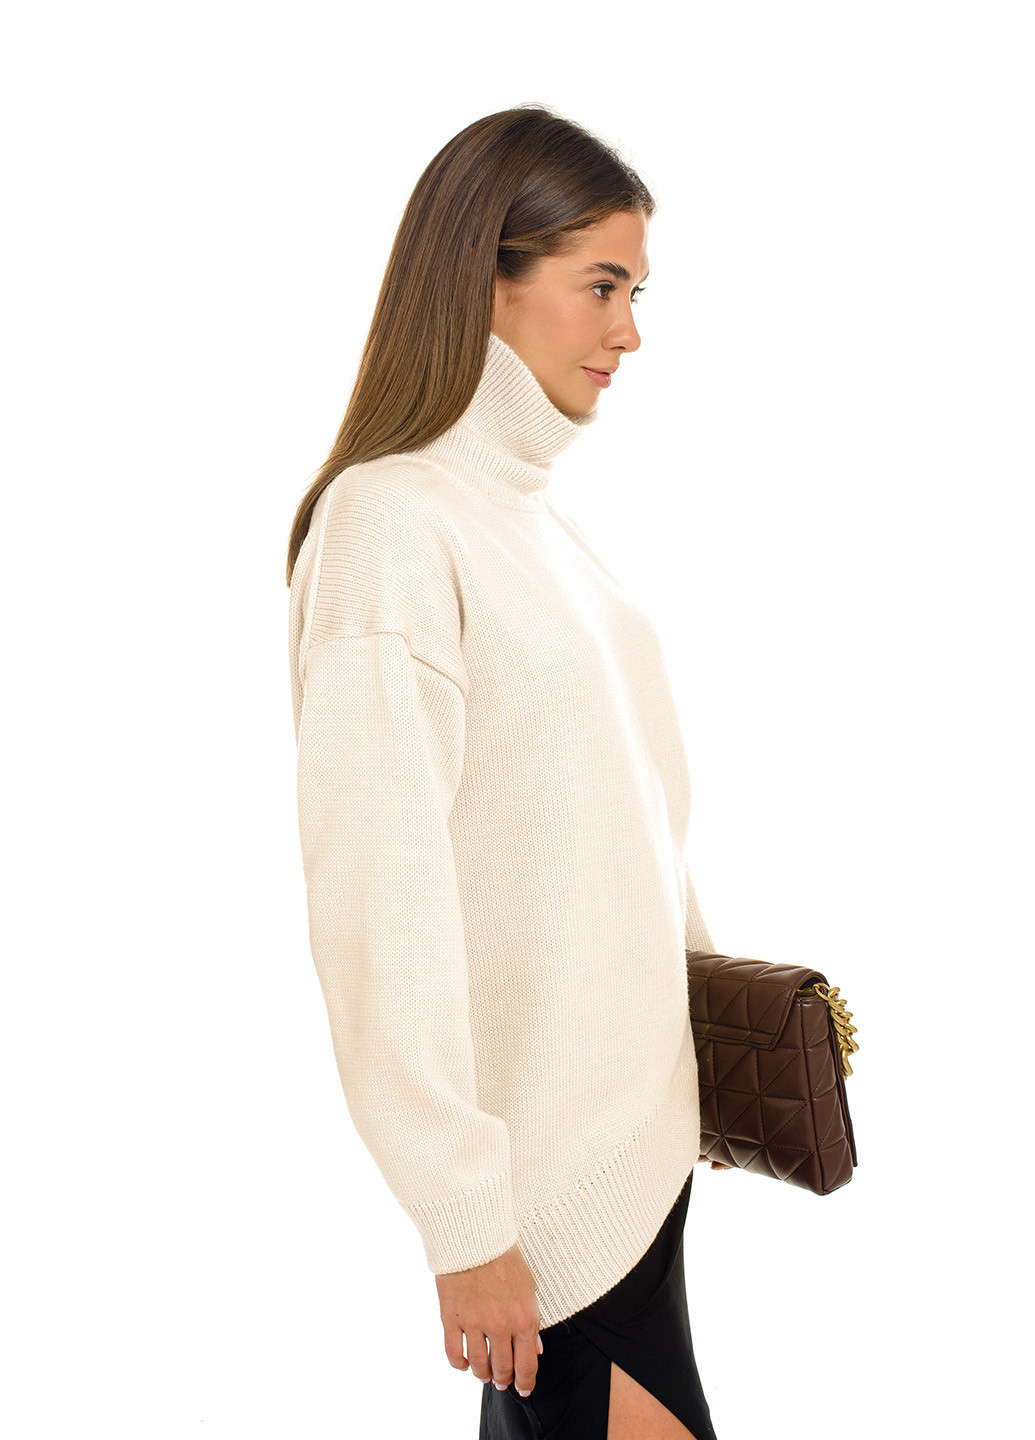 Молочный свитер оверсайз с высоким воротником-стойка. SVTR